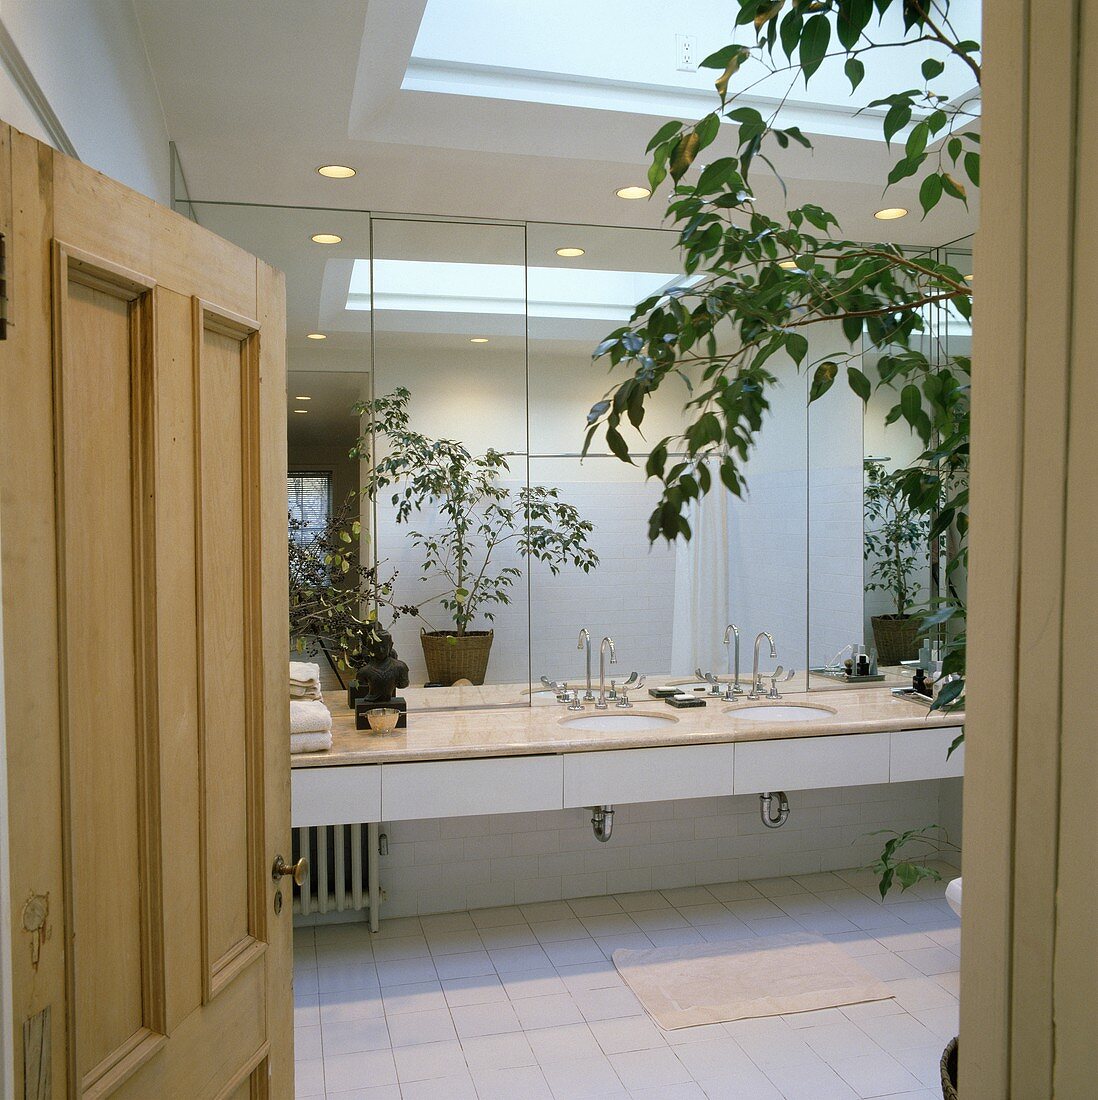 Modernes, weissgefliestes Loft-Badezimmer mit Spiegelwand, Doppelwaschbecken und Oberlicht